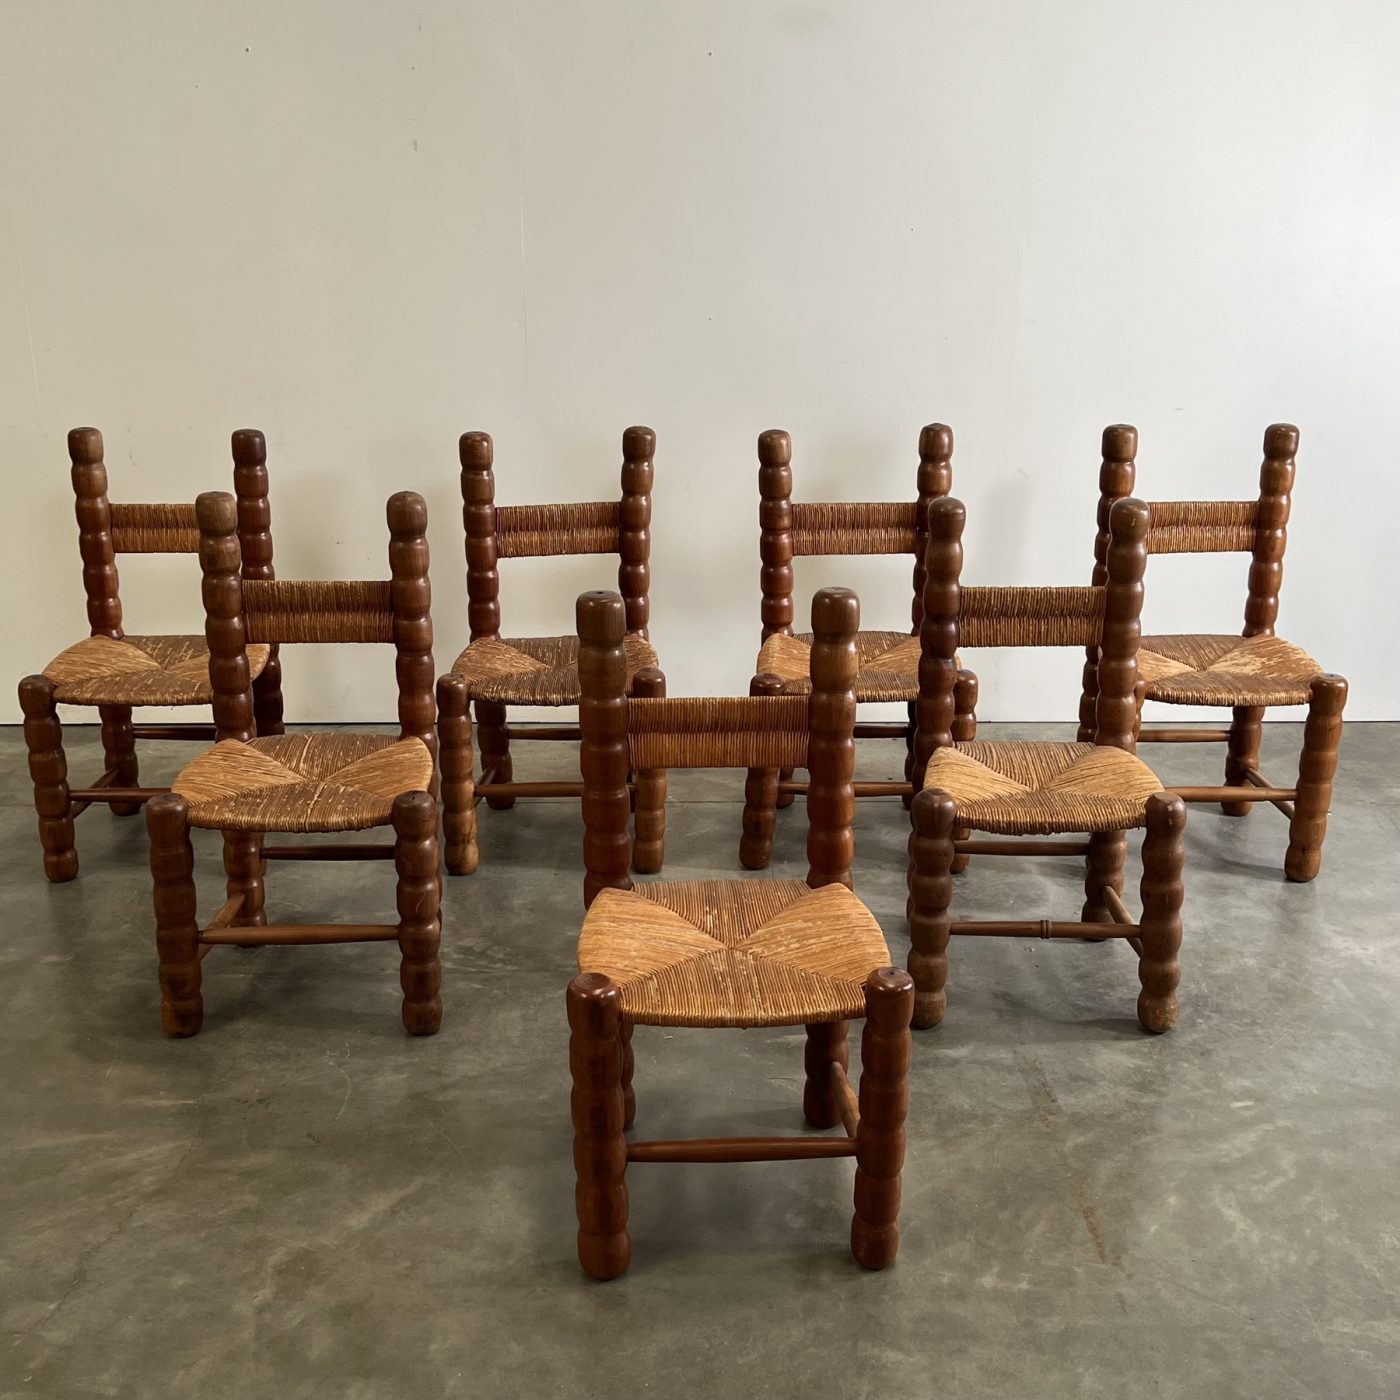 objet-vagabond-massive-chairs0008